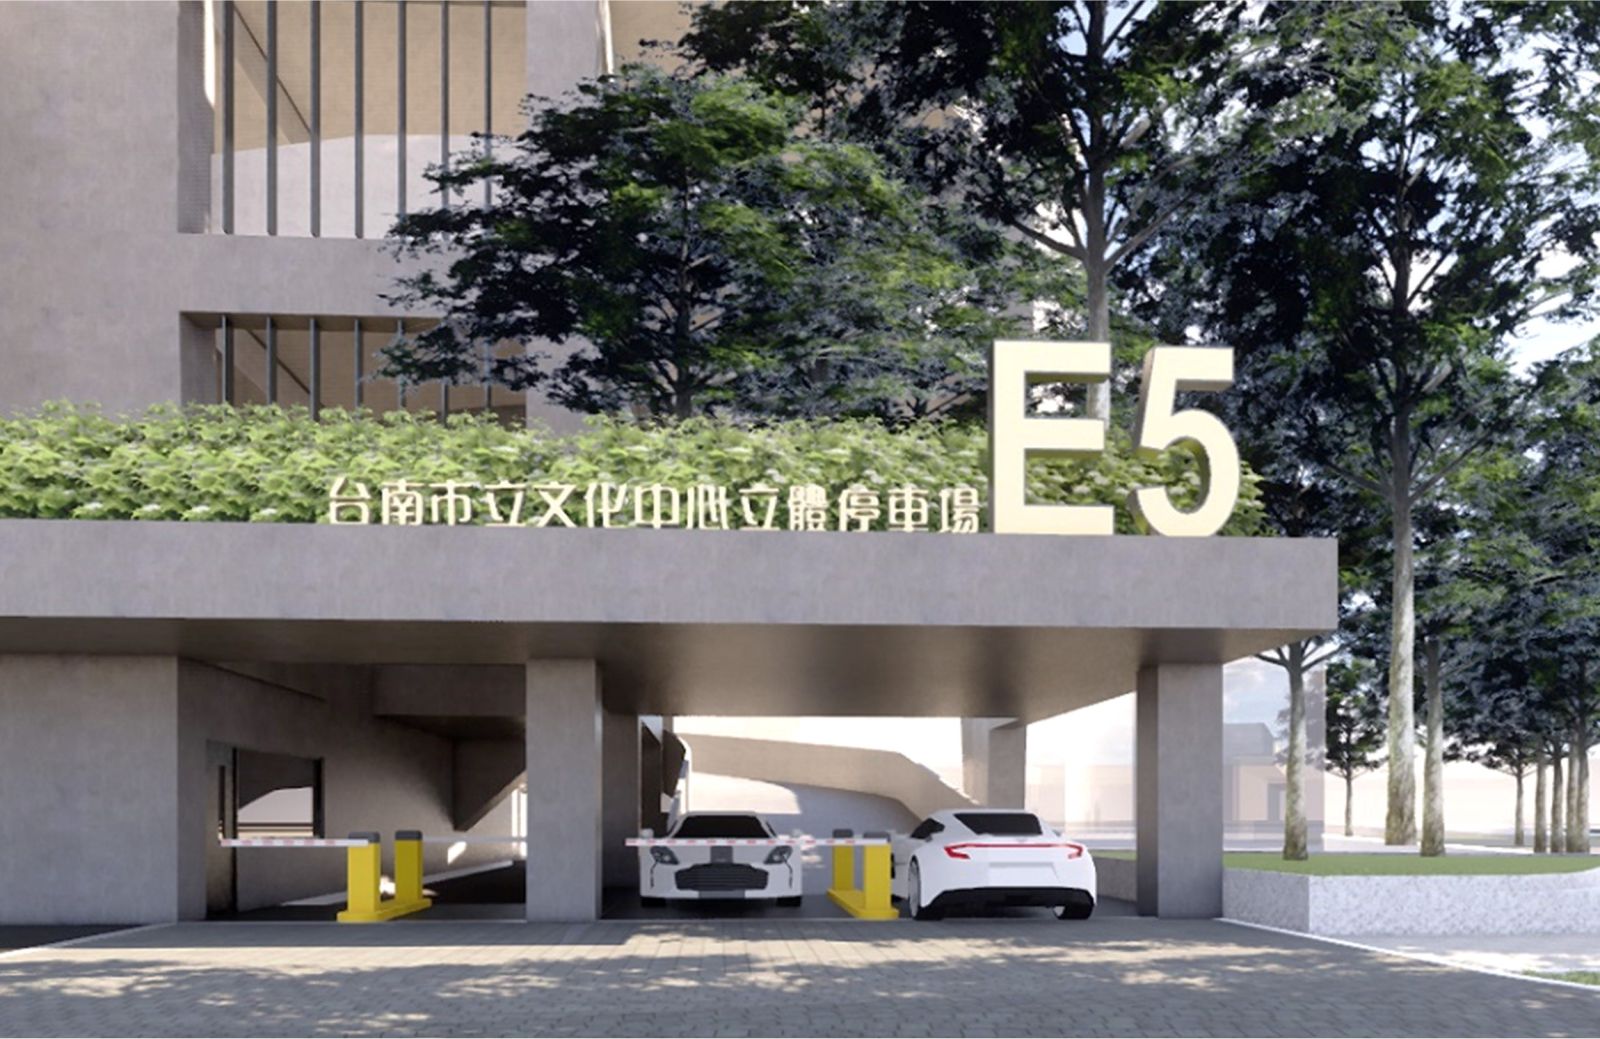 台南市東區文化中心停E5立體停車場新建工程委託規劃設計暨後續擴充監造案交通顧問